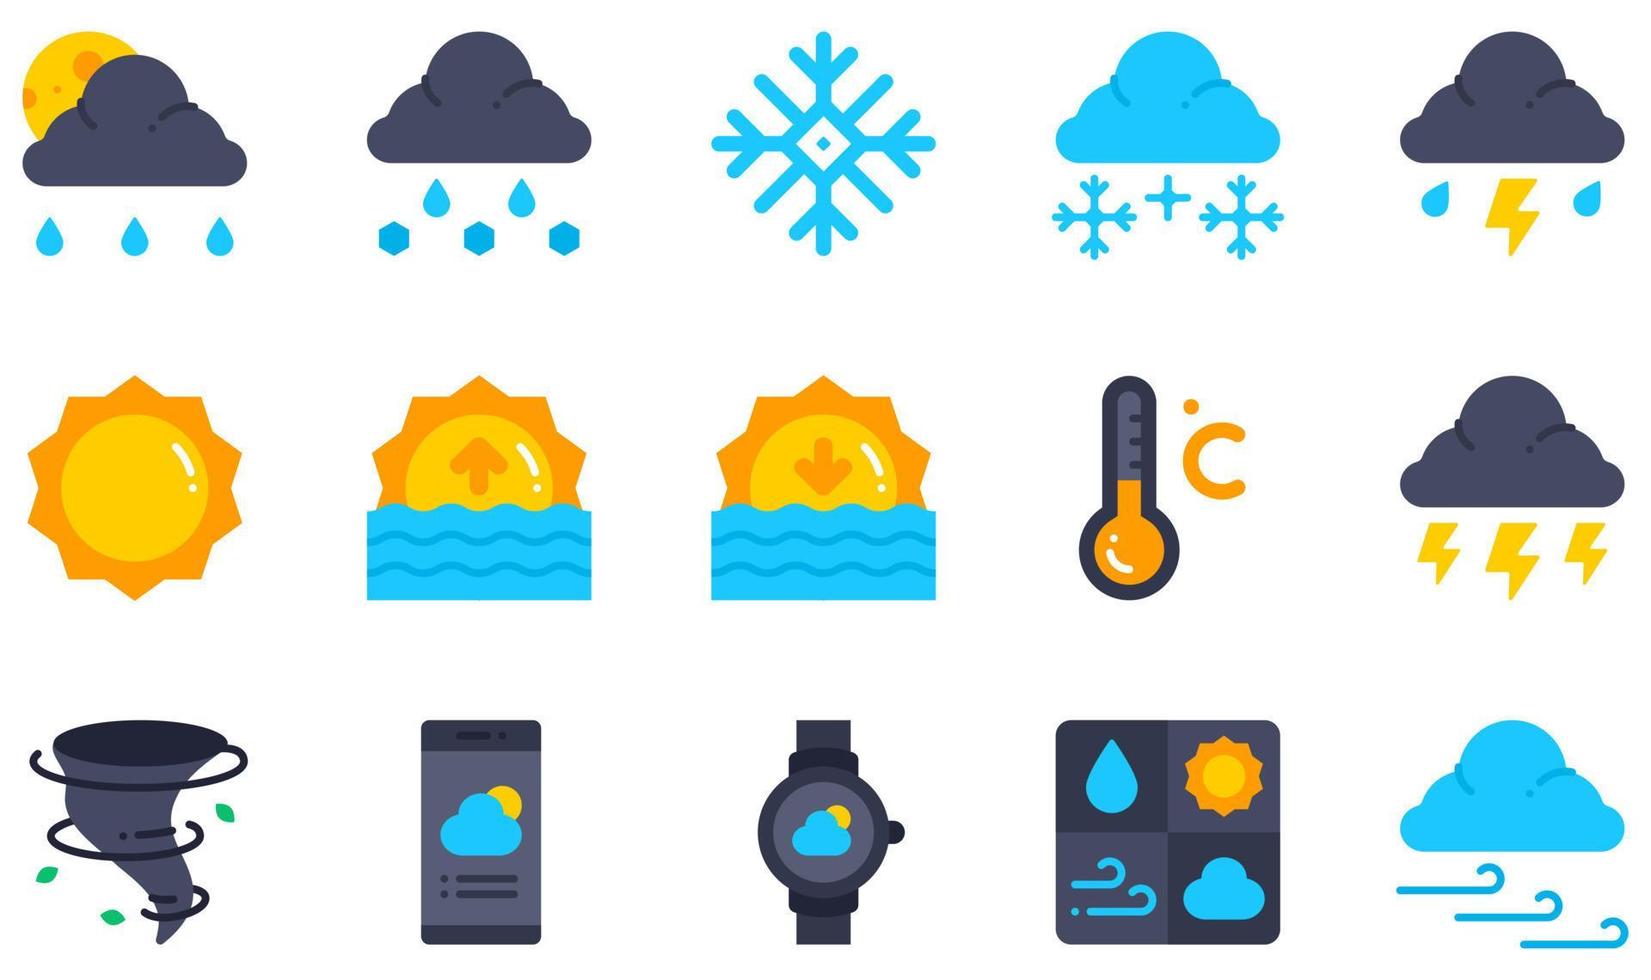 conjunto de ícones vetoriais relacionados ao clima. contém ícones como granizo, neve, tempestade, nascer do sol, pôr do sol, trovoada e muito mais. vetor